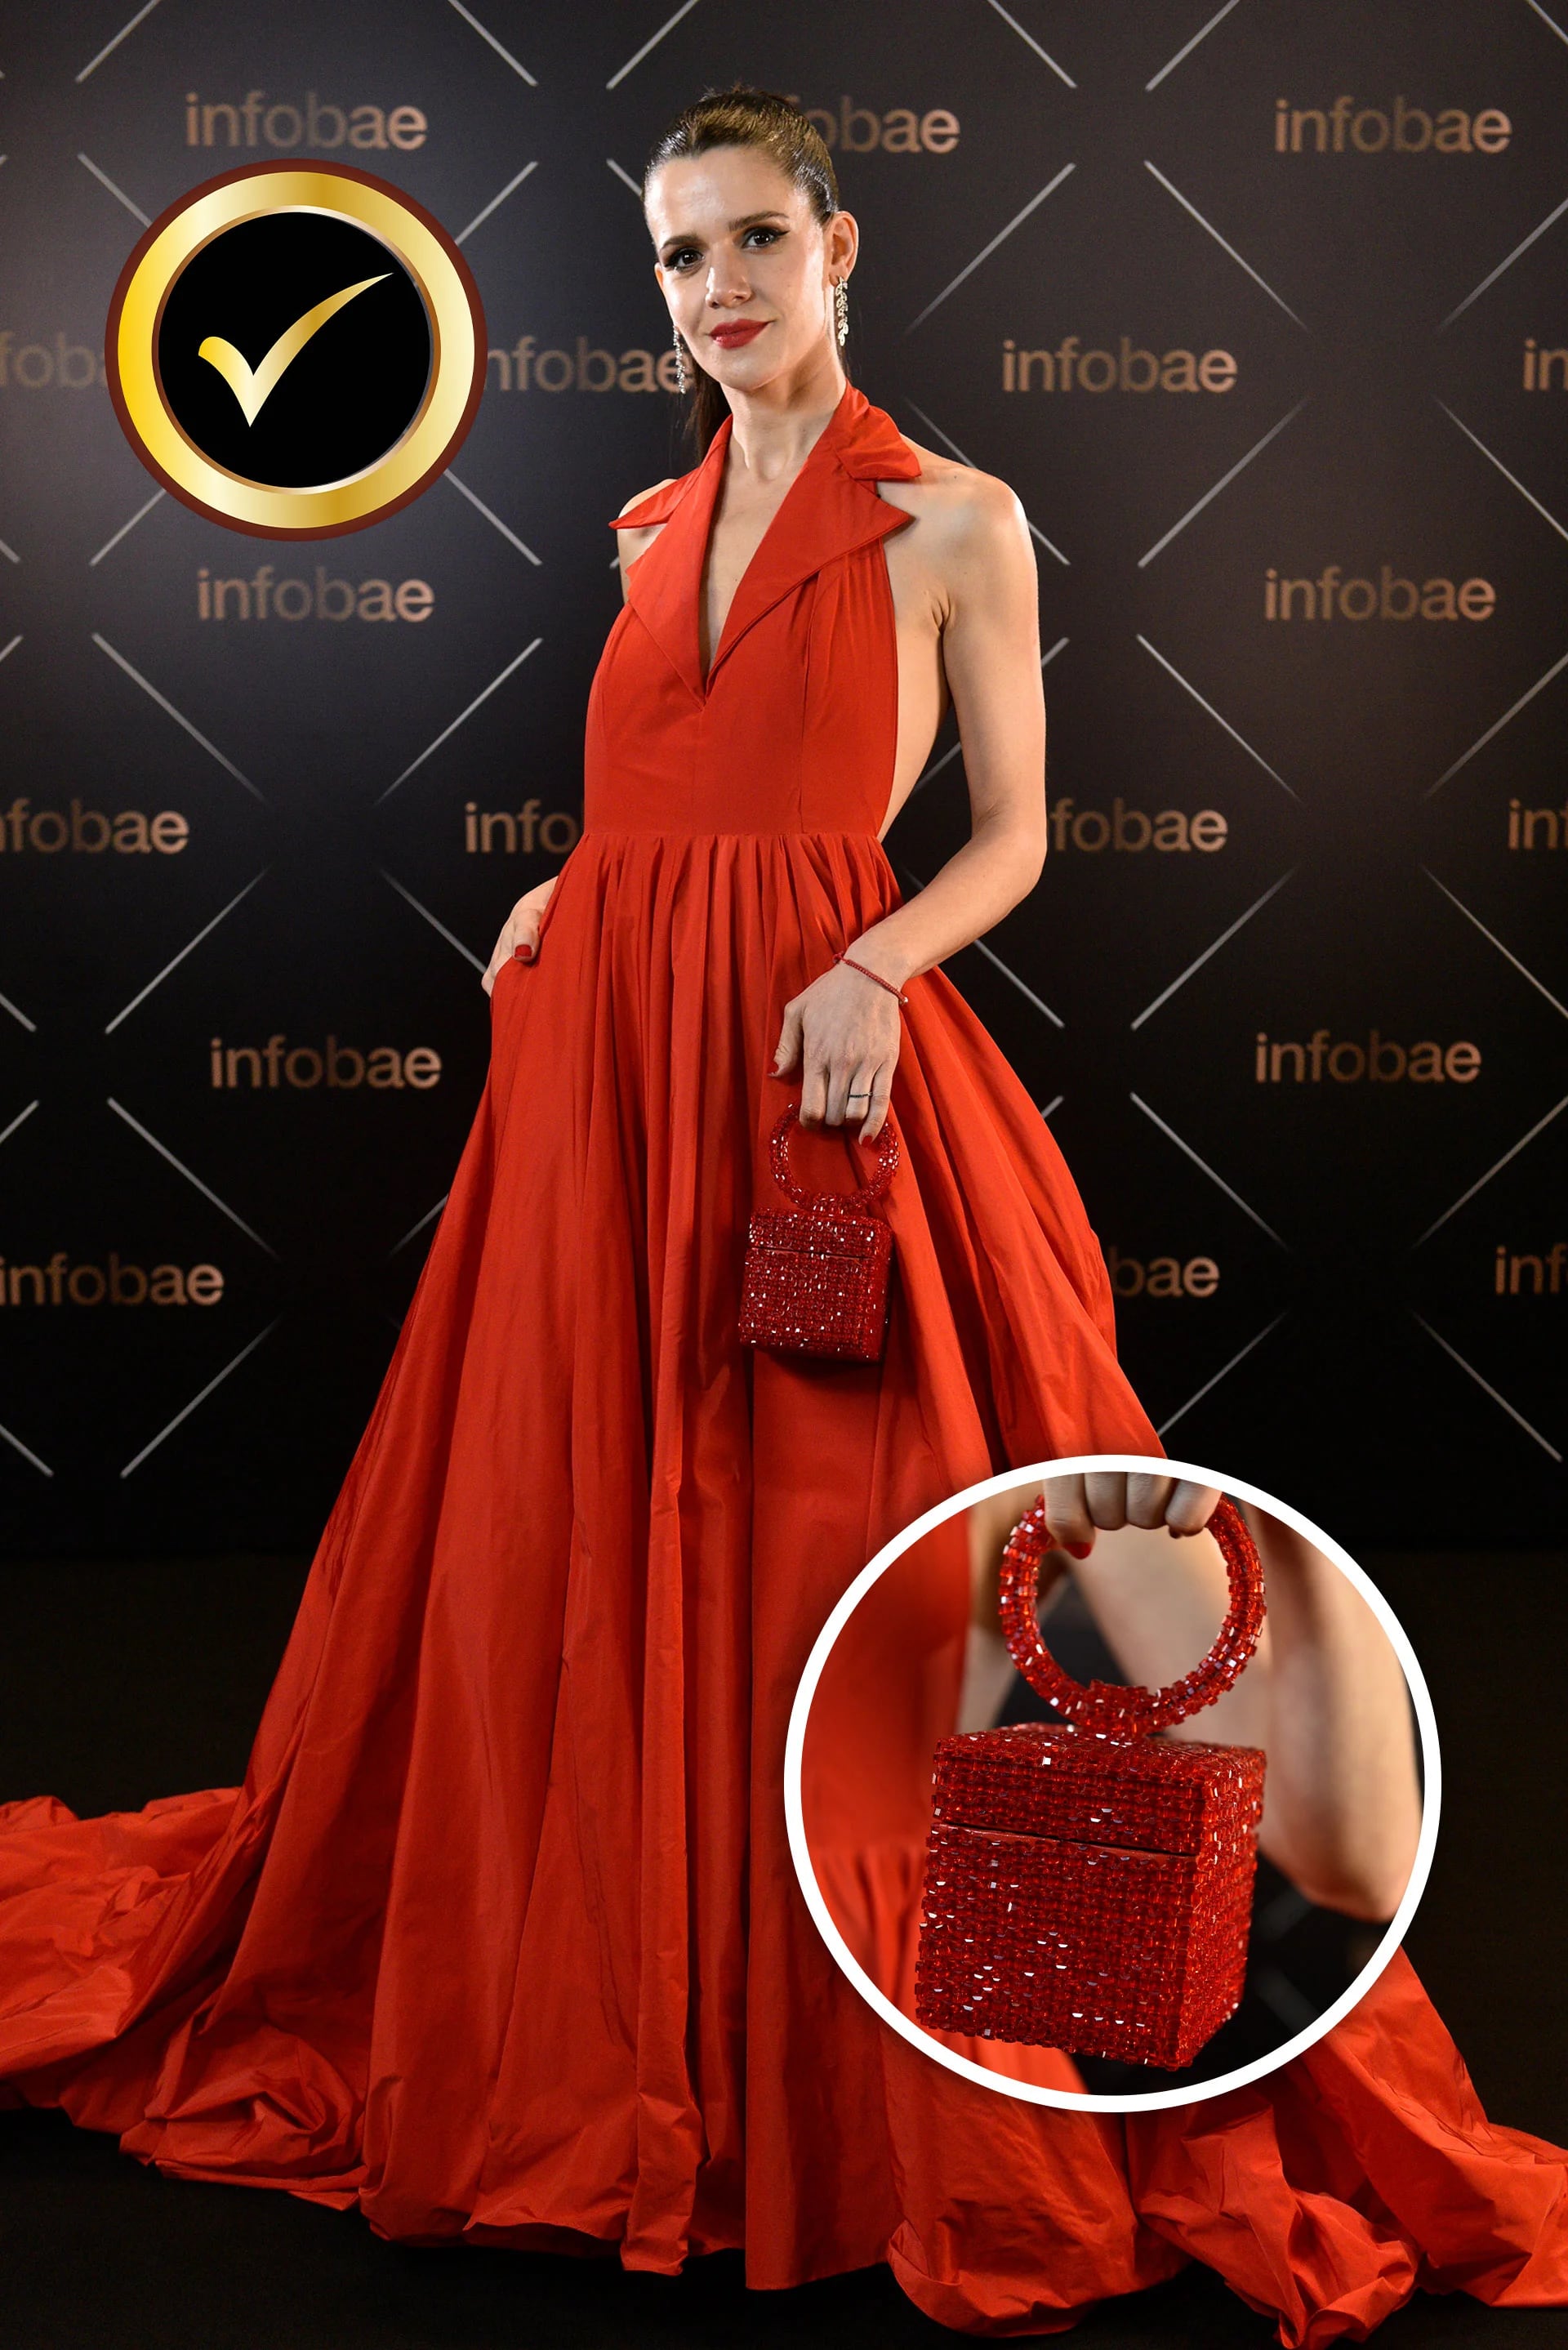 Violeta Urtizberea eligió un modelo diseñado por Jorge Rey, que acompañó con una imponente cartera a tono